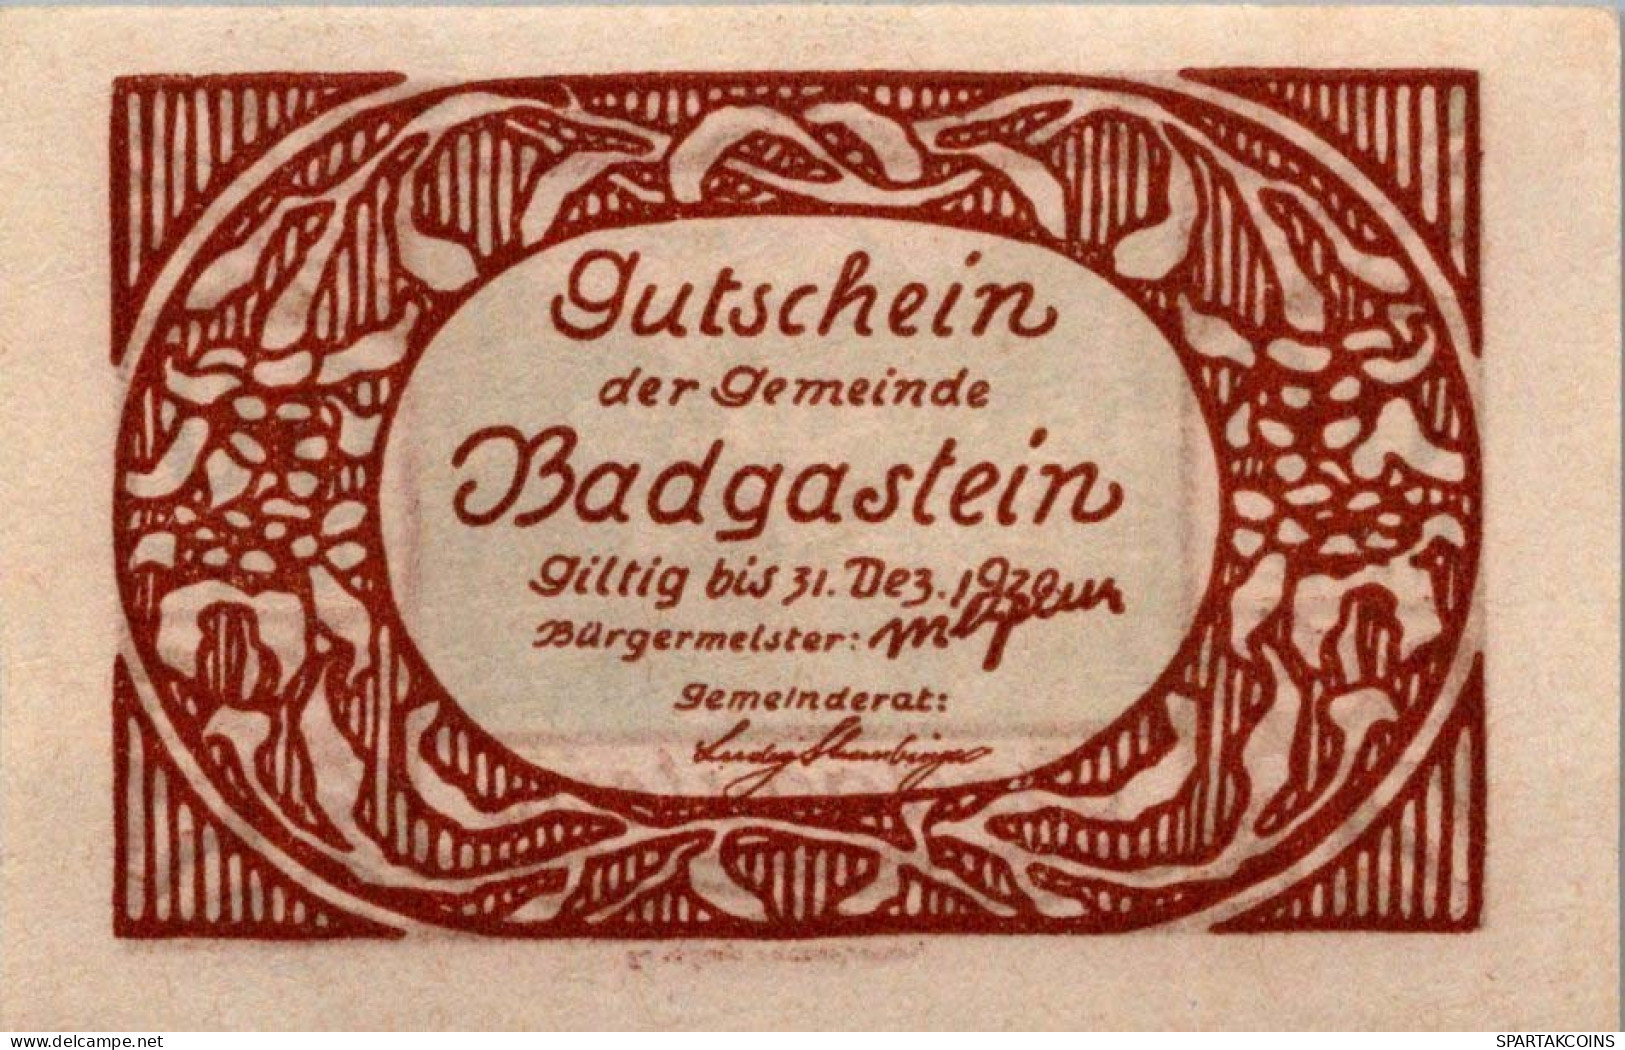 60 HELLER 1920 Stadt BAD GASTEIN Salzburg Österreich Notgeld Papiergeld Banknote #PG525 - [11] Emisiones Locales